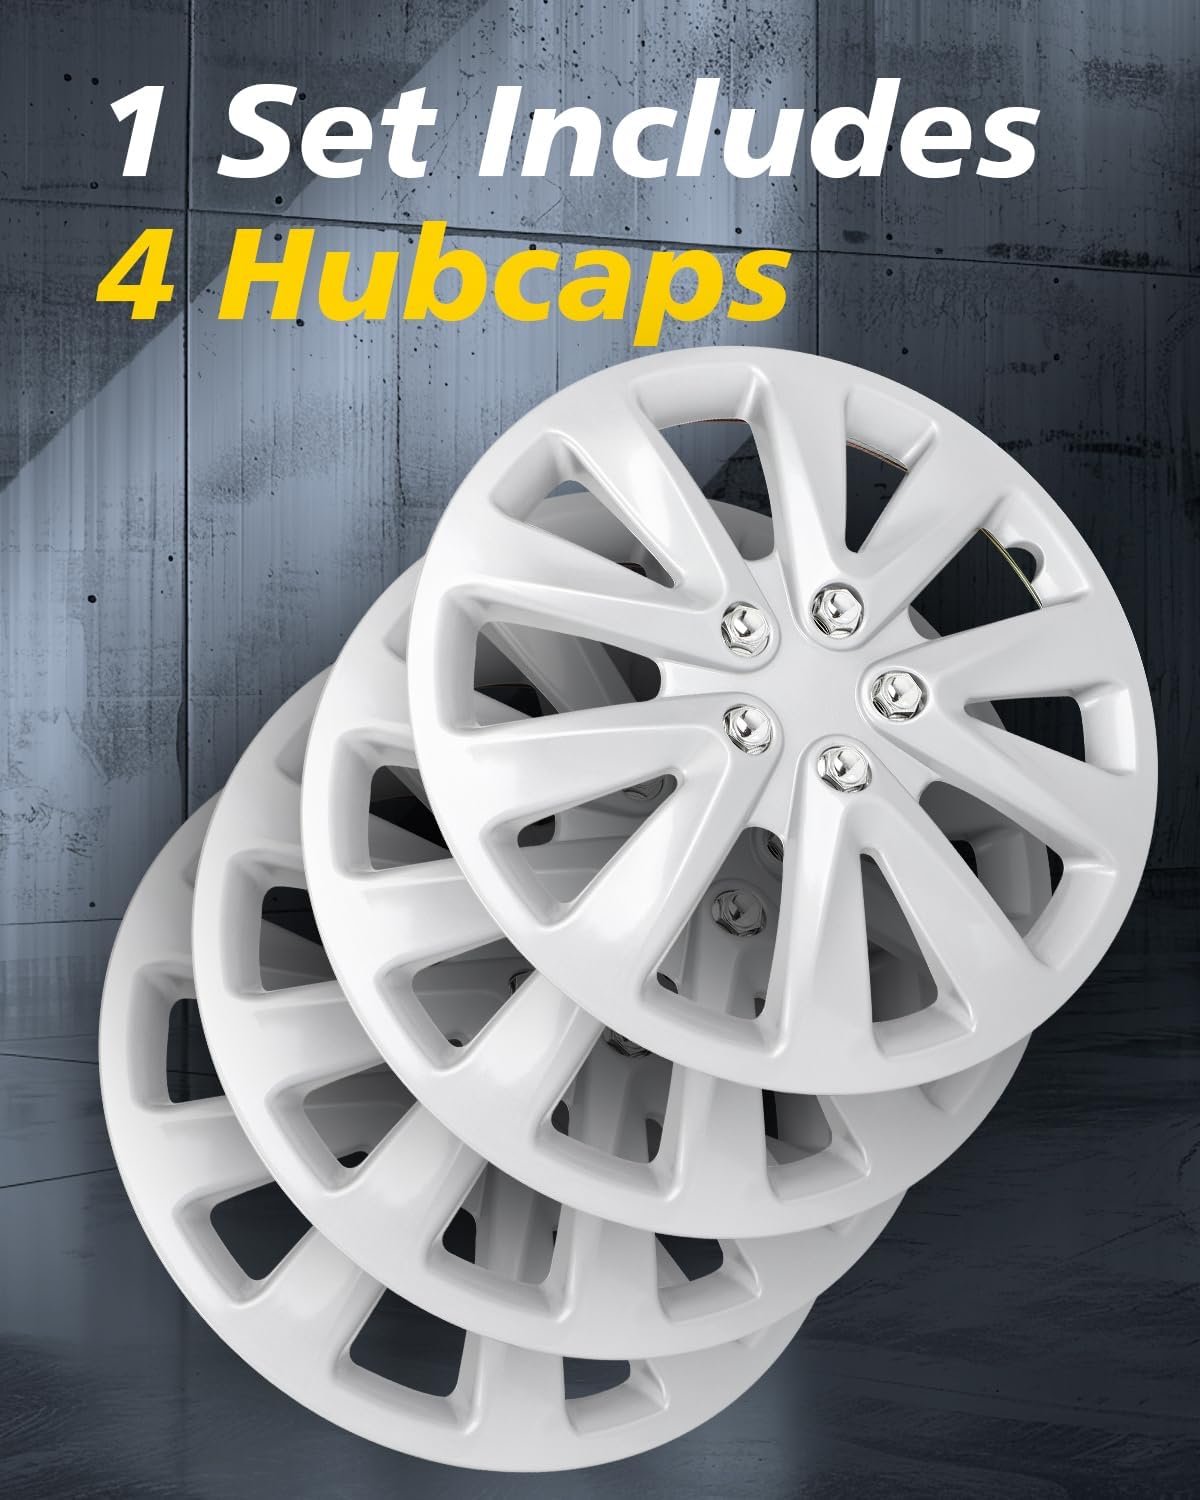 ROADFAR Wheel Hubcaps Review